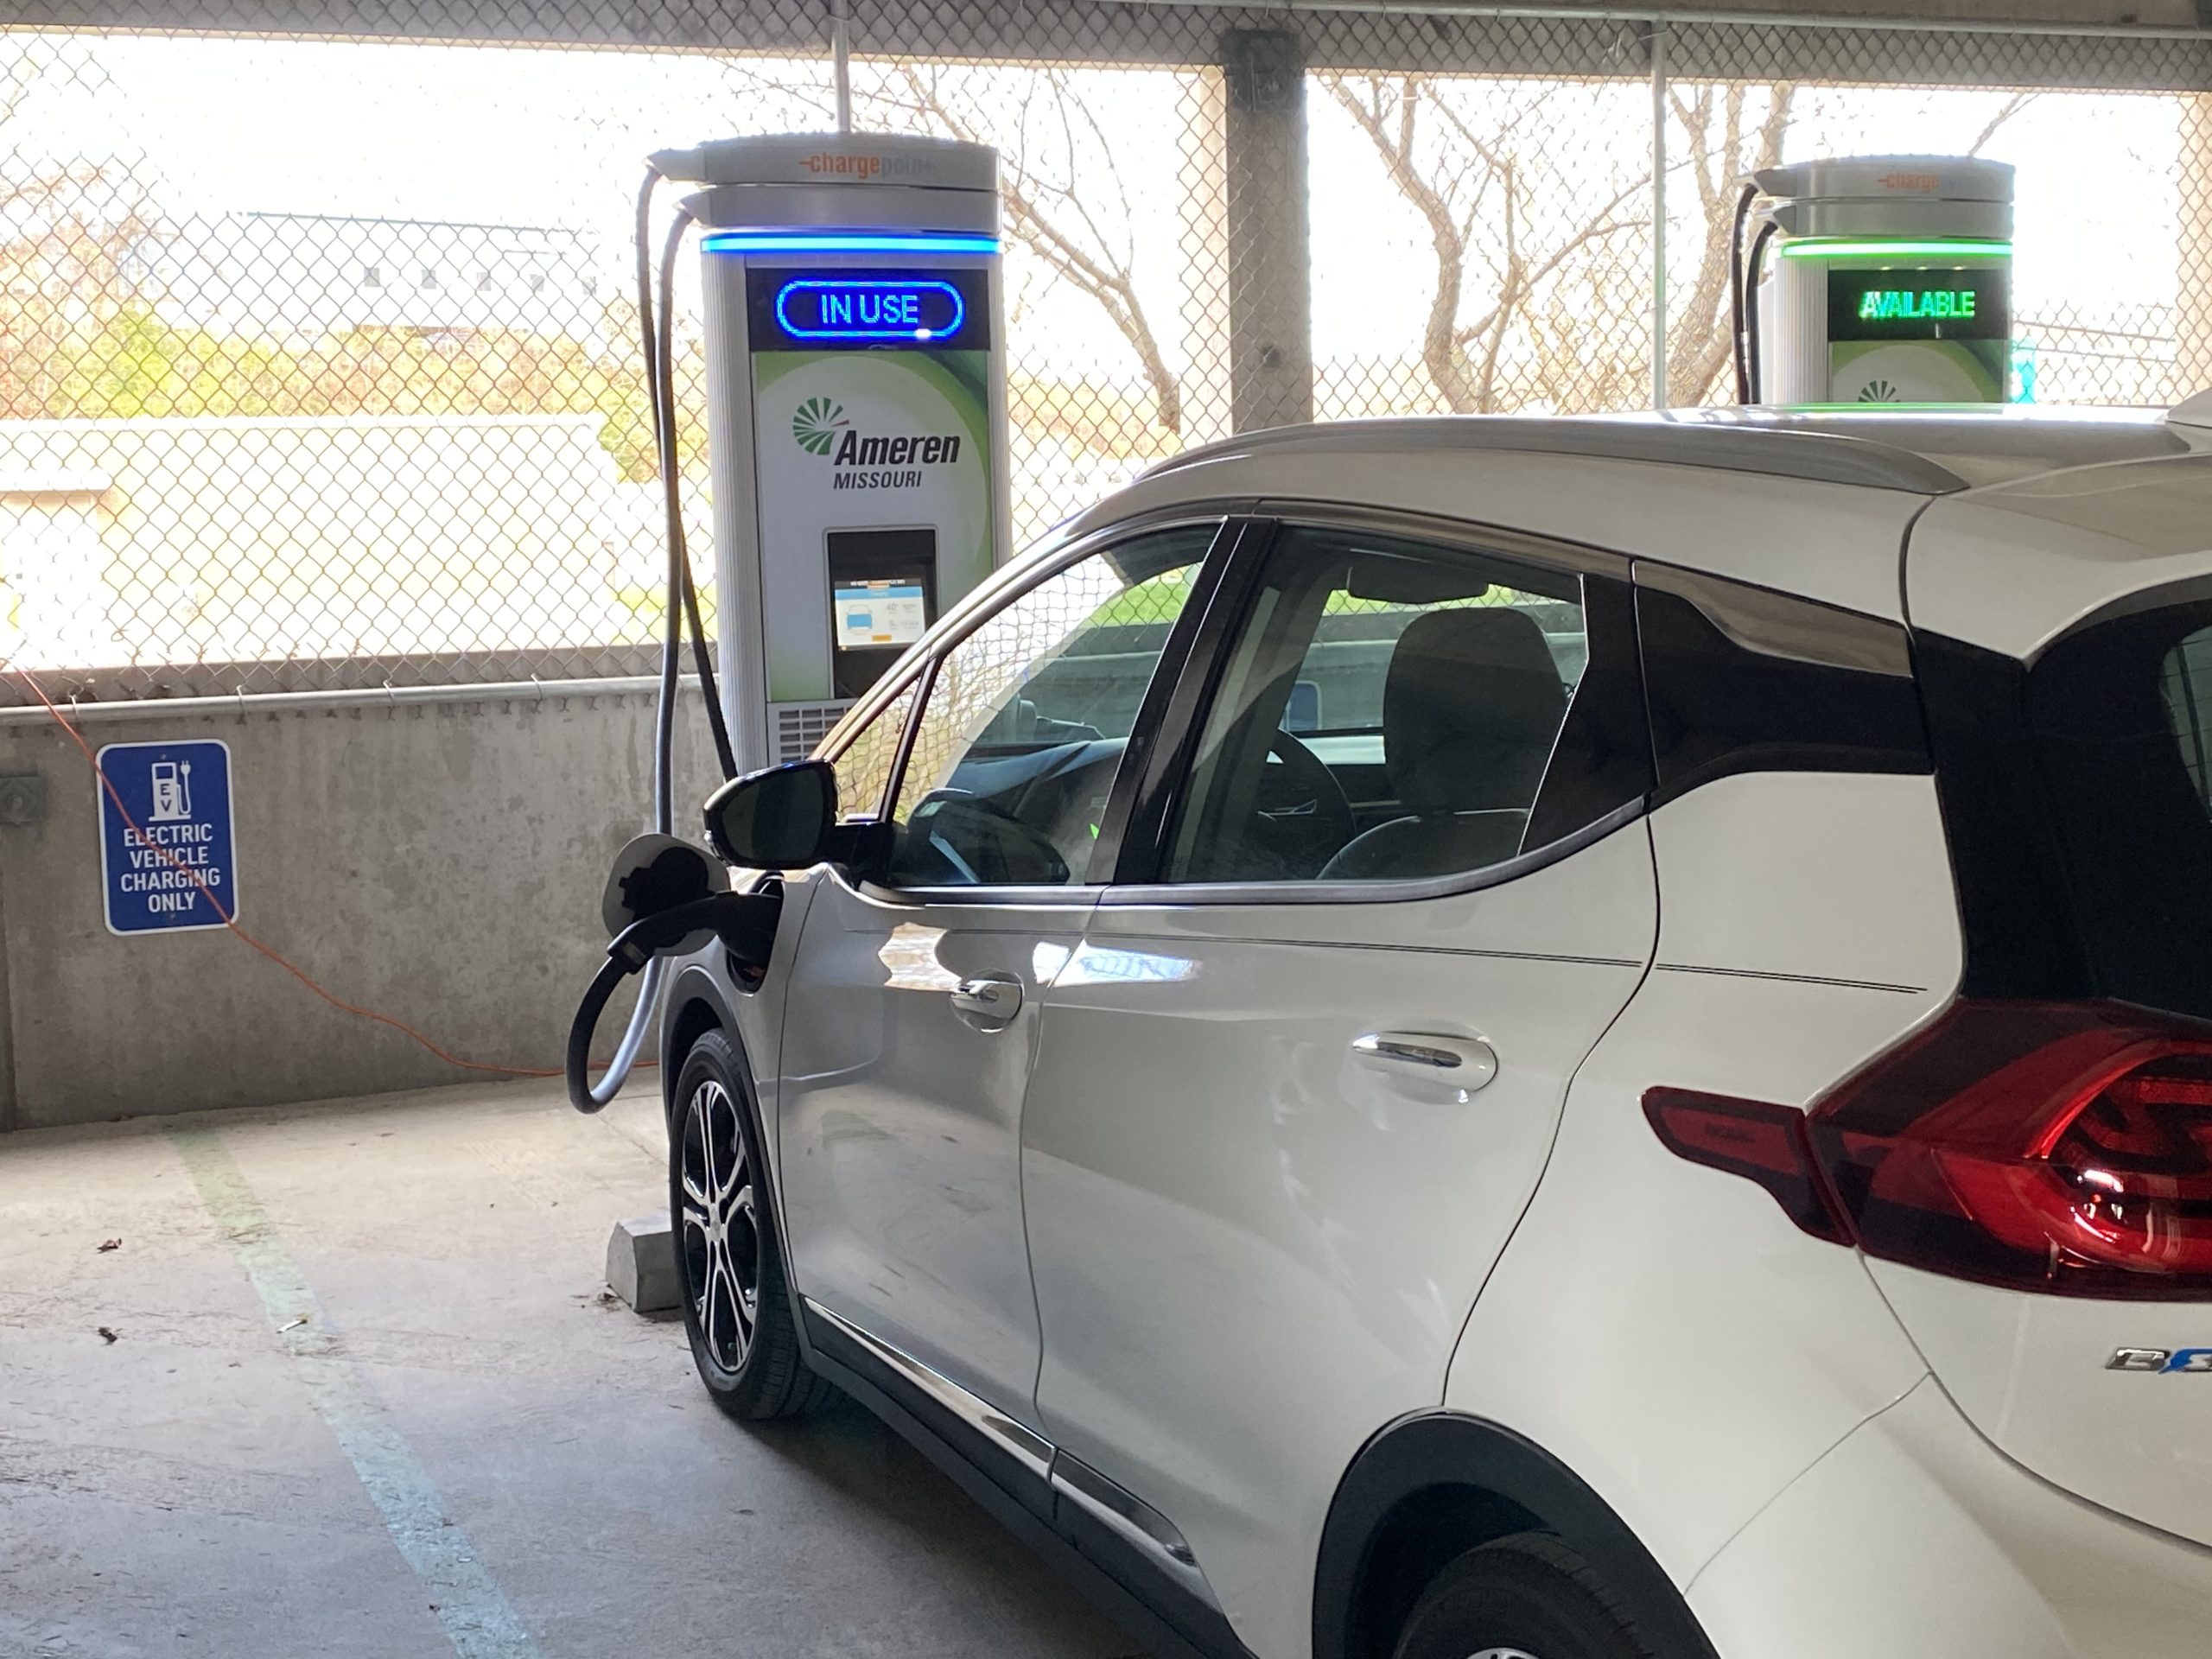 EV charging